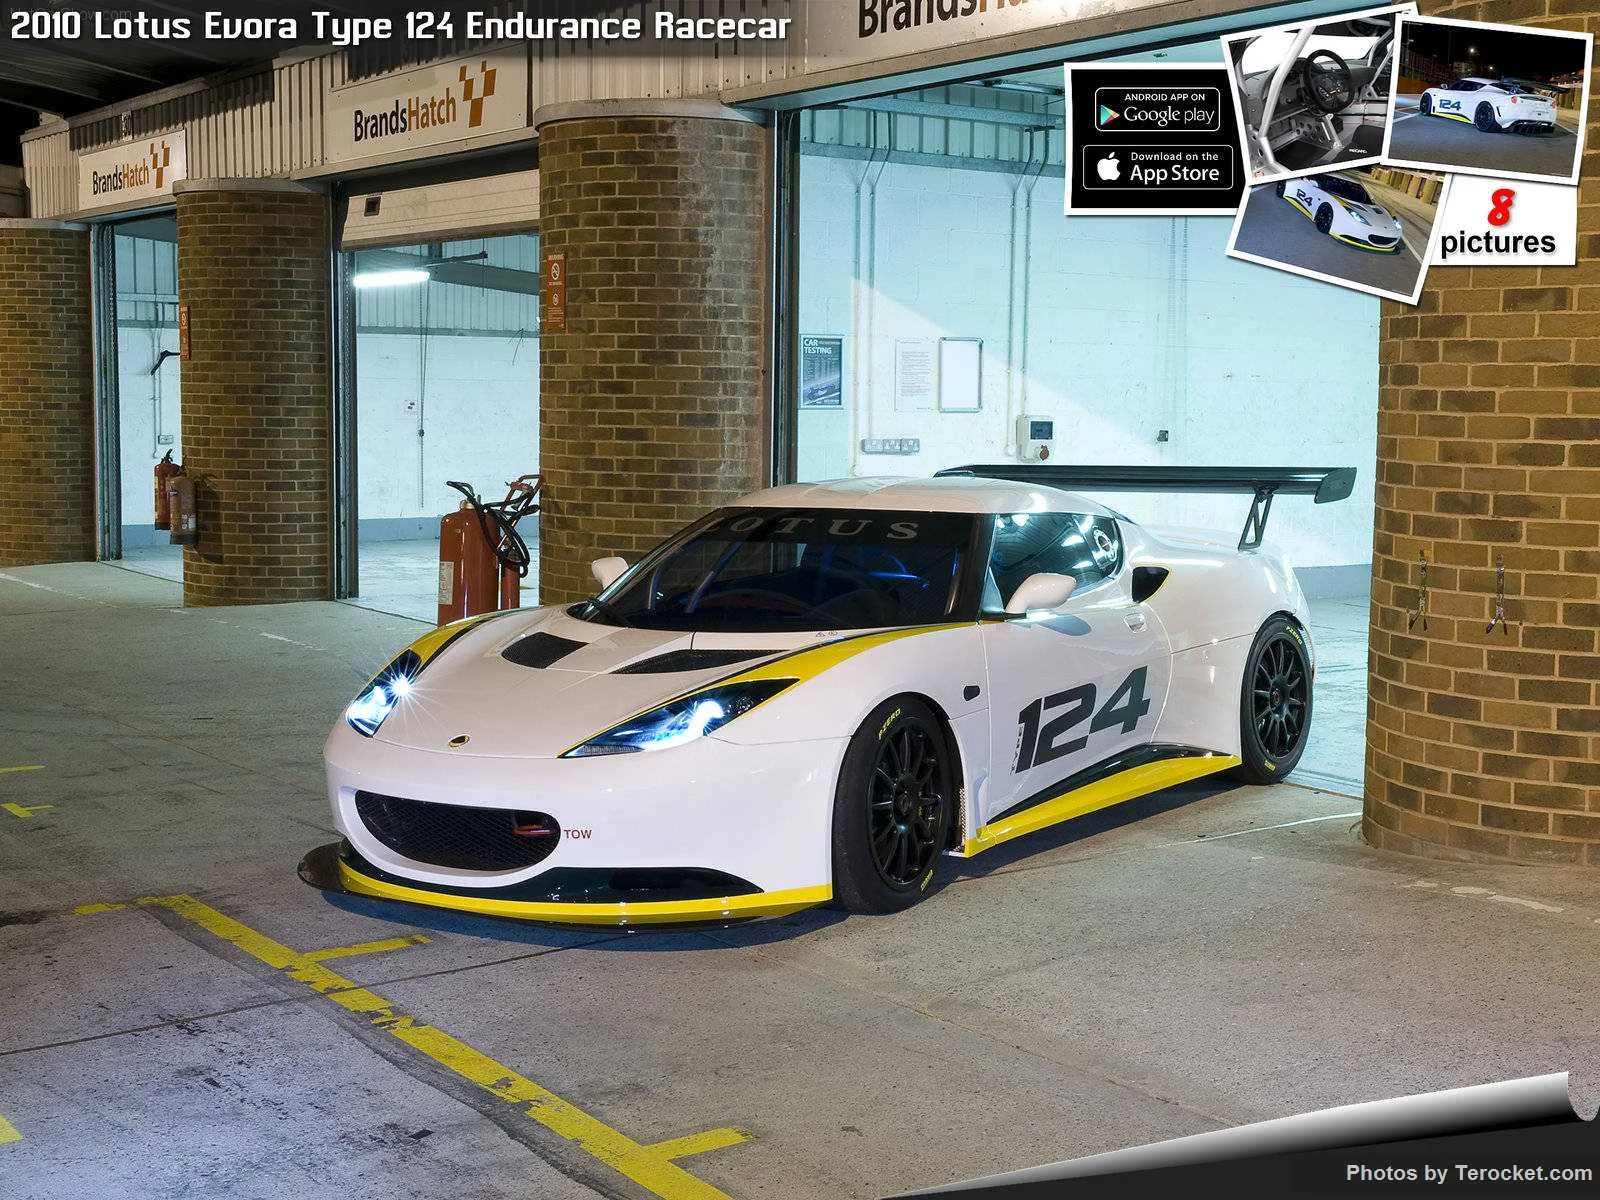 Hình ảnh siêu xe Lotus Evora Type 124 Endurance Racecar 2010 & nội ngoại thất